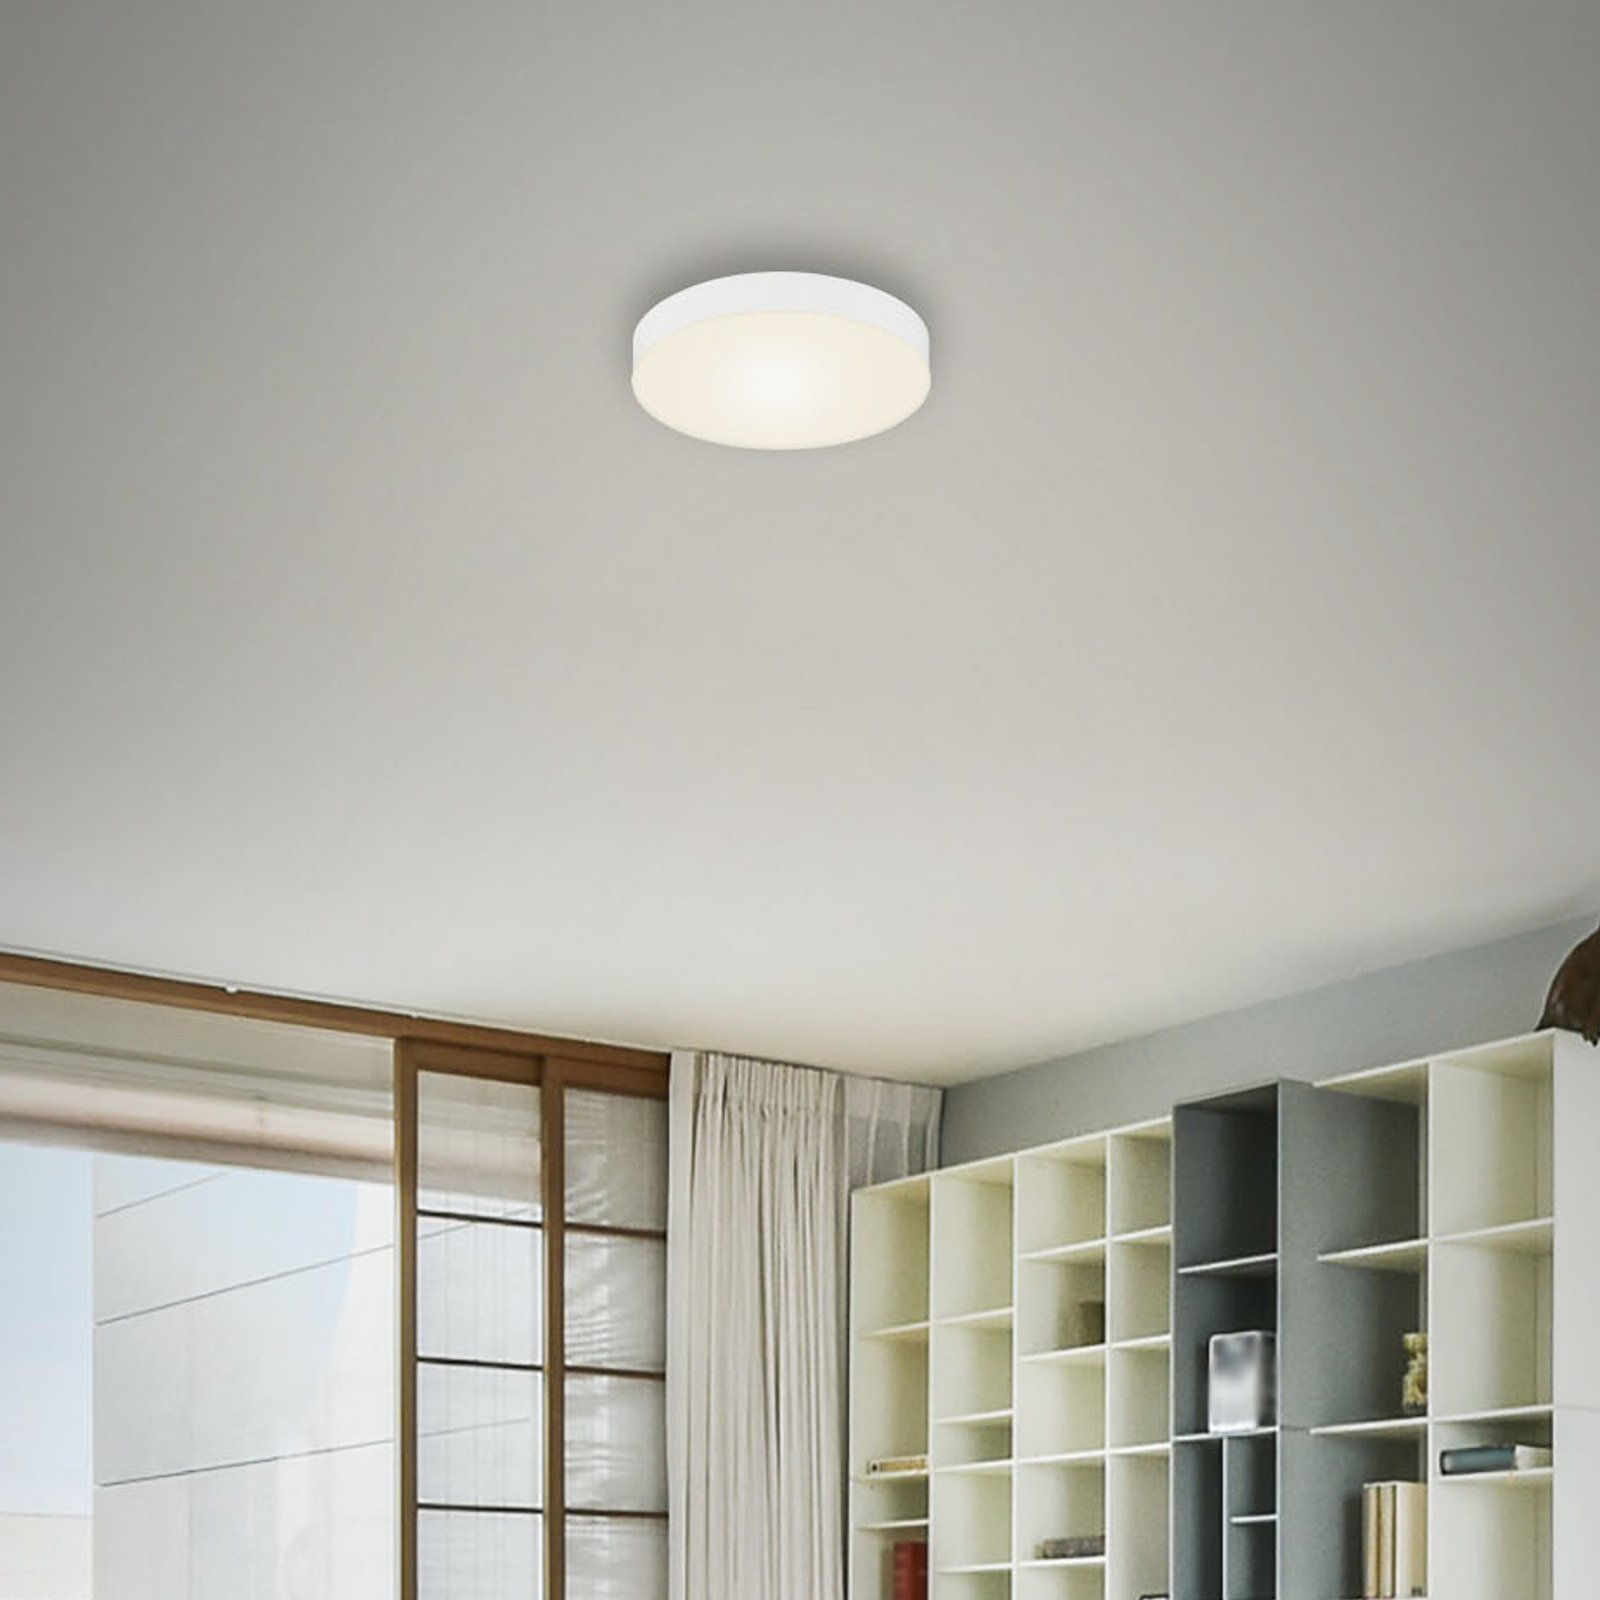 Flame LED ceiling light, Ø 15.7 cm, white